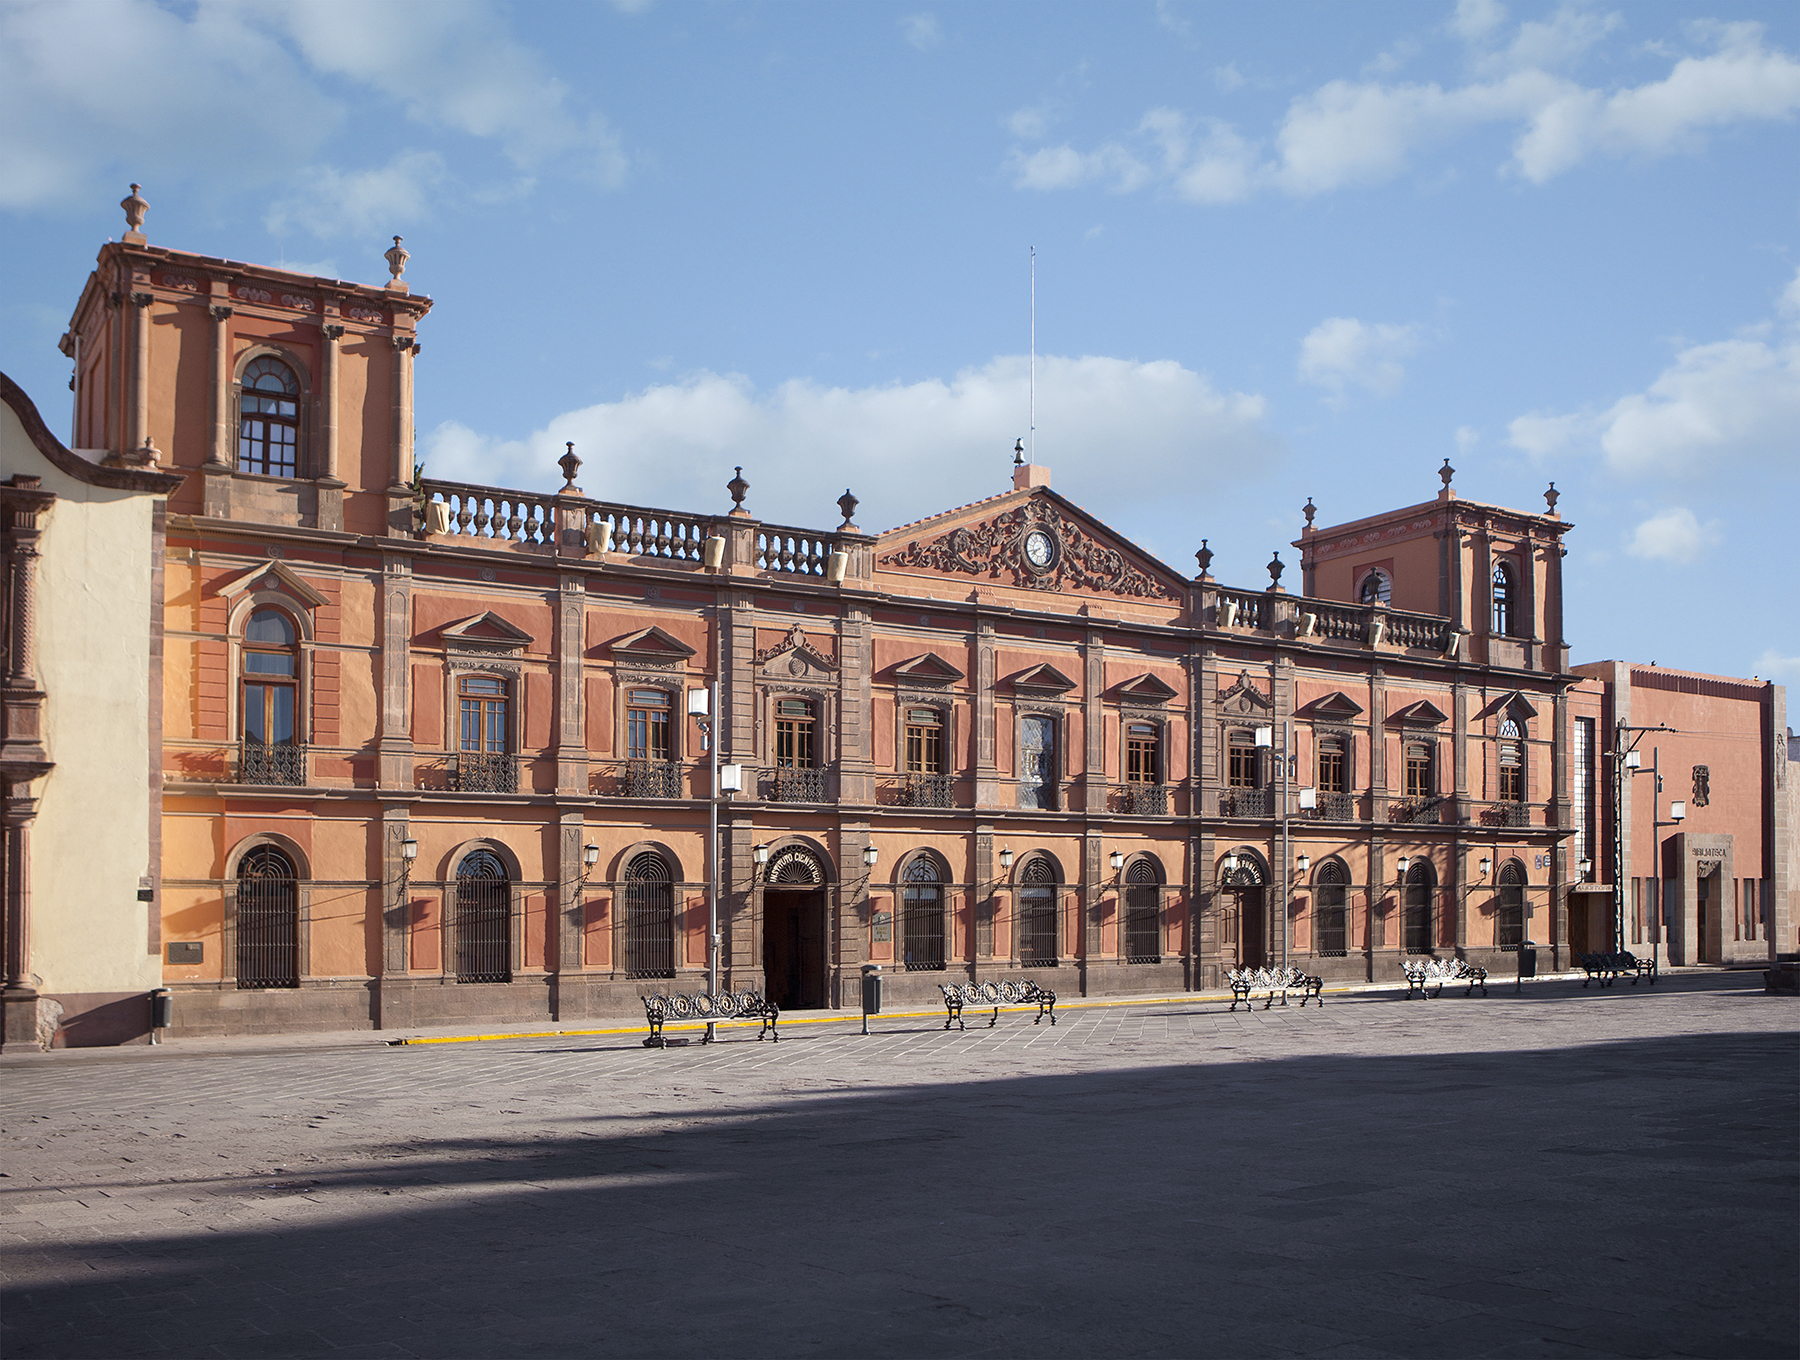 El personal administrativo, docente y alumnos de la Universidad Autónoma de San Luis Potosí iniciará su segundo periodo vacacional del año